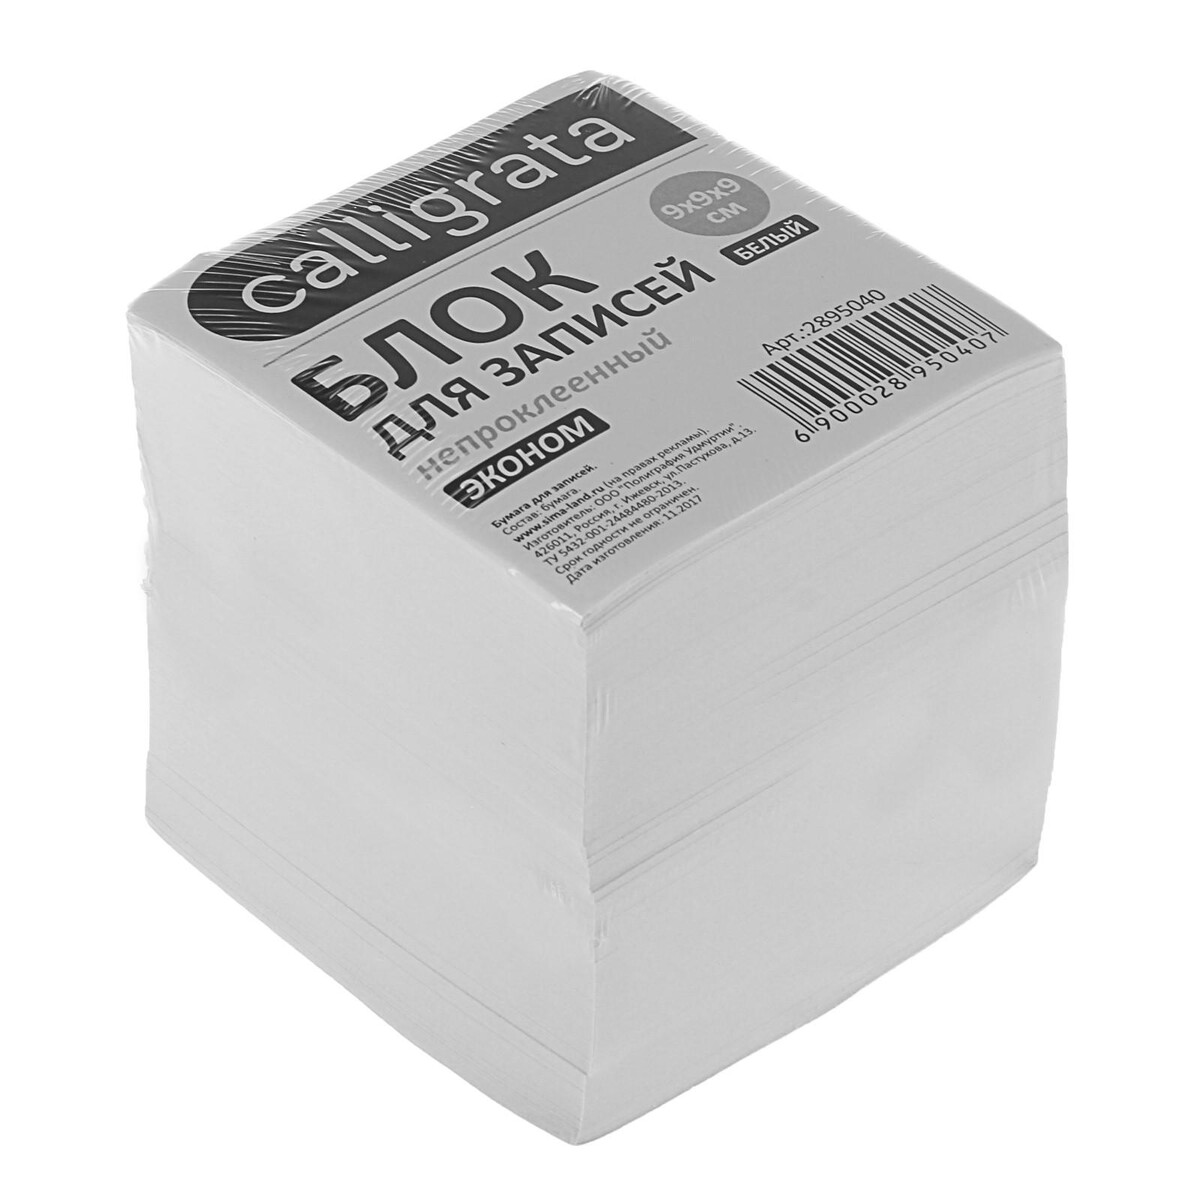 Блок бумаги для записей 9x9x9 см, calligrata, 55 г/м², 70-80%, непроклеенный, белый блок бумаги д записей на склейке 8х8х8 calligrata белый 65г м2 белиз 92%